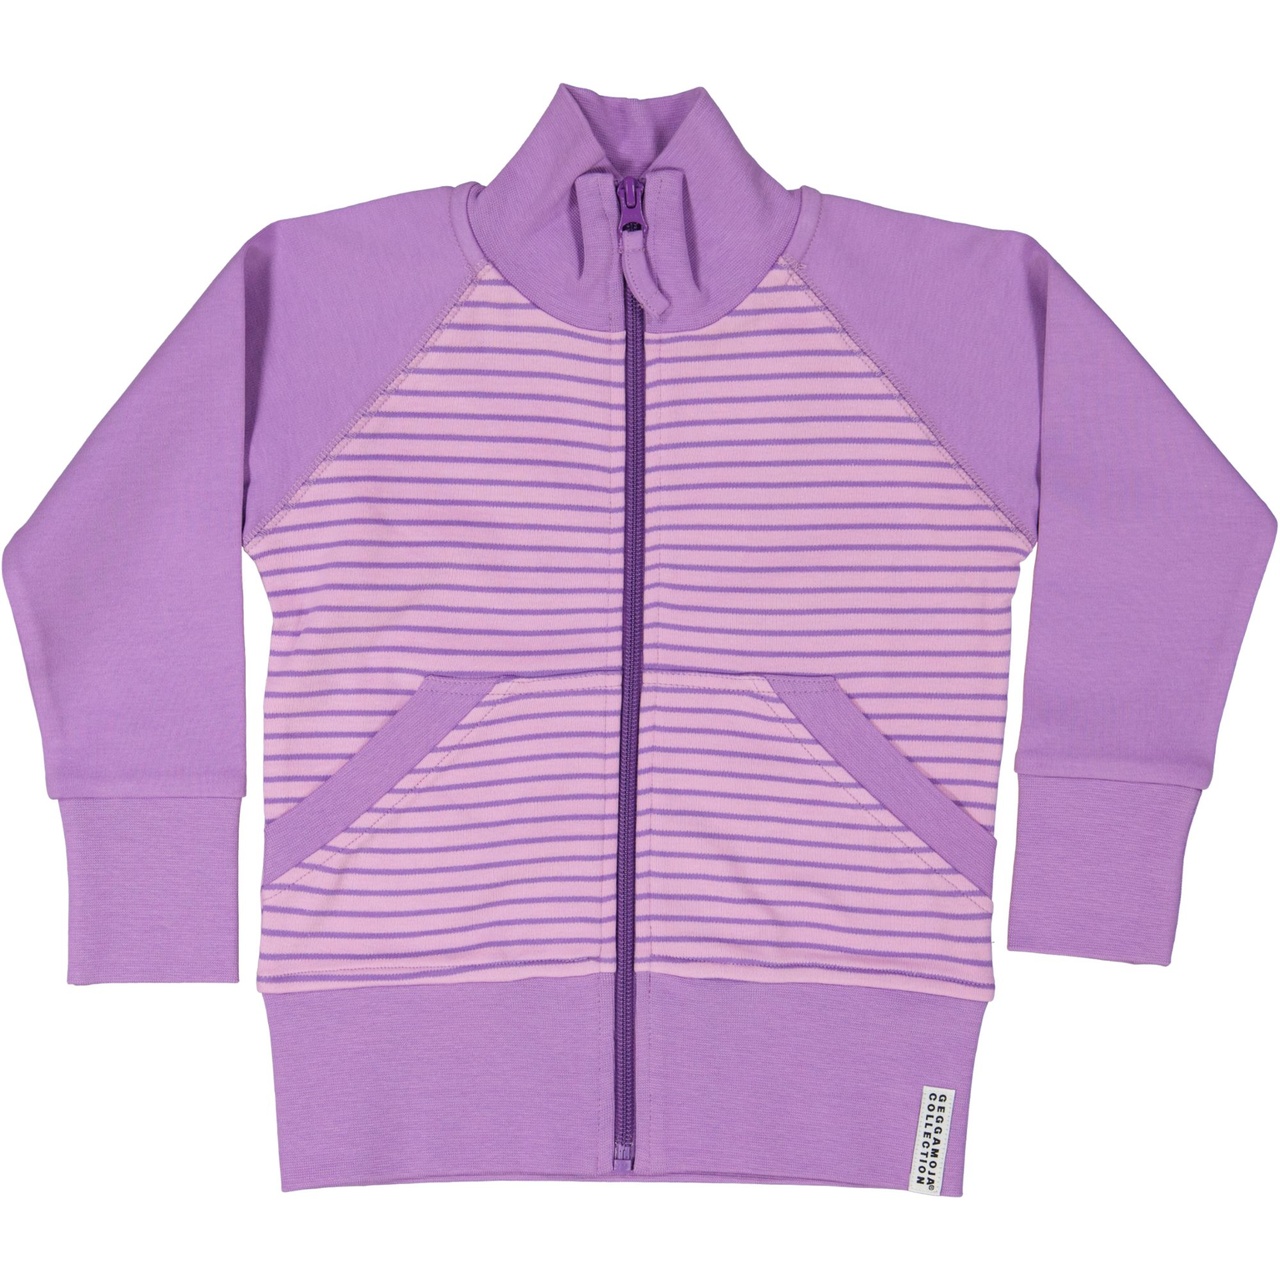 Zip sweater L.purple/purple 16